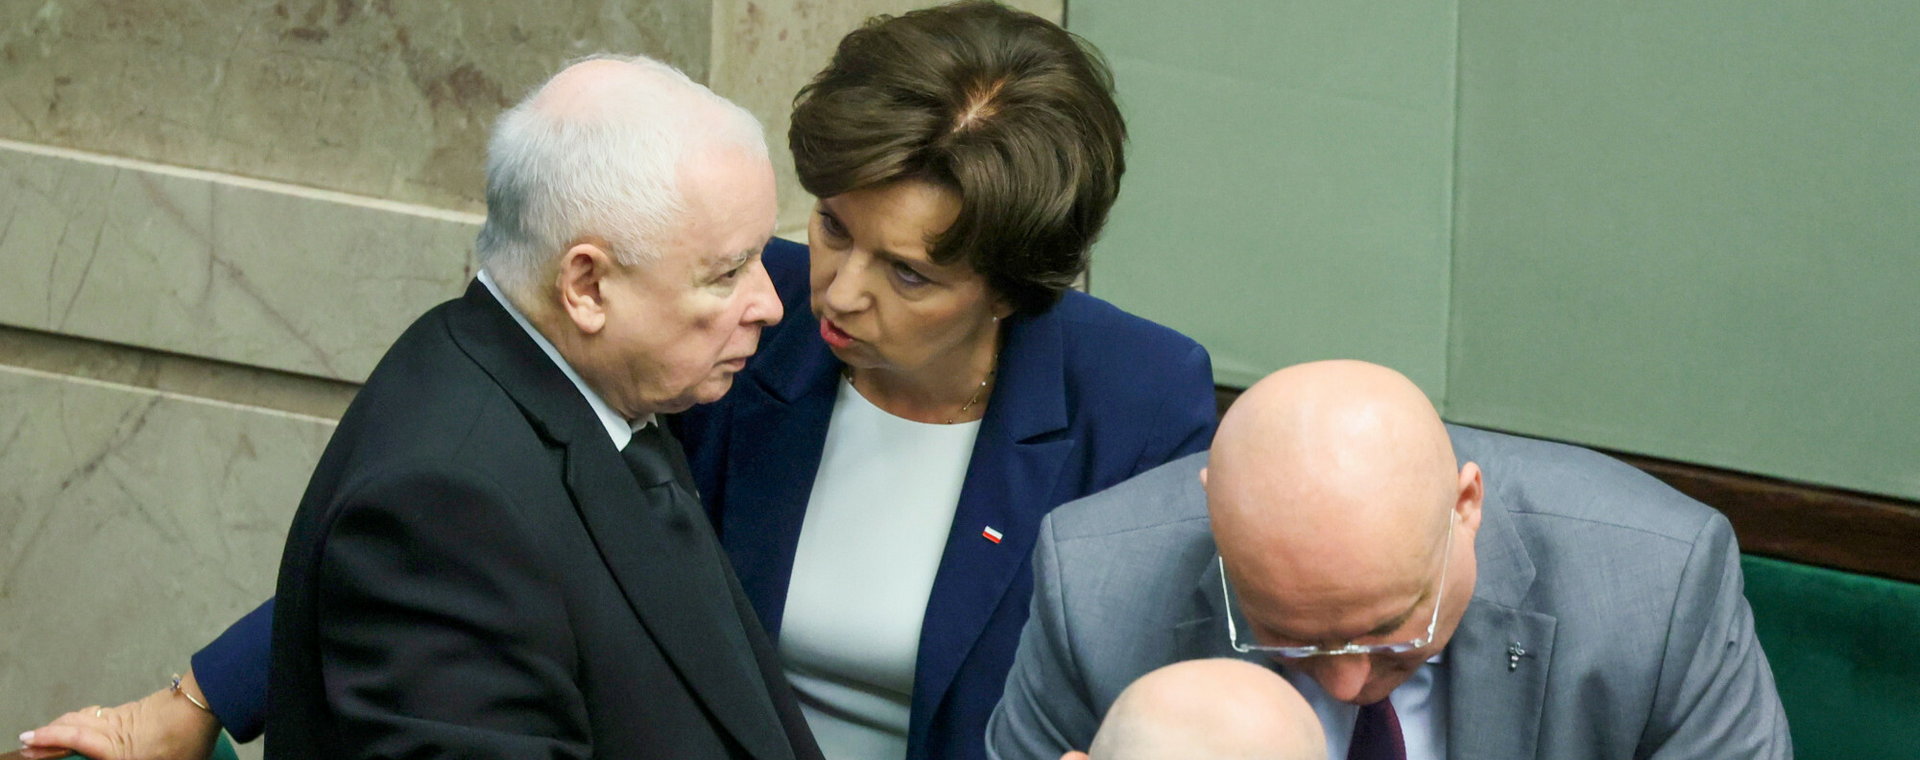 Sejm przegłosował nowelizację w sprawie emerytur pomostowych. Na zdjęciu m.in. Jarosław Kaczyński, prezes PiS i Marlena Maląg, minister rodziny i polityki społecznej